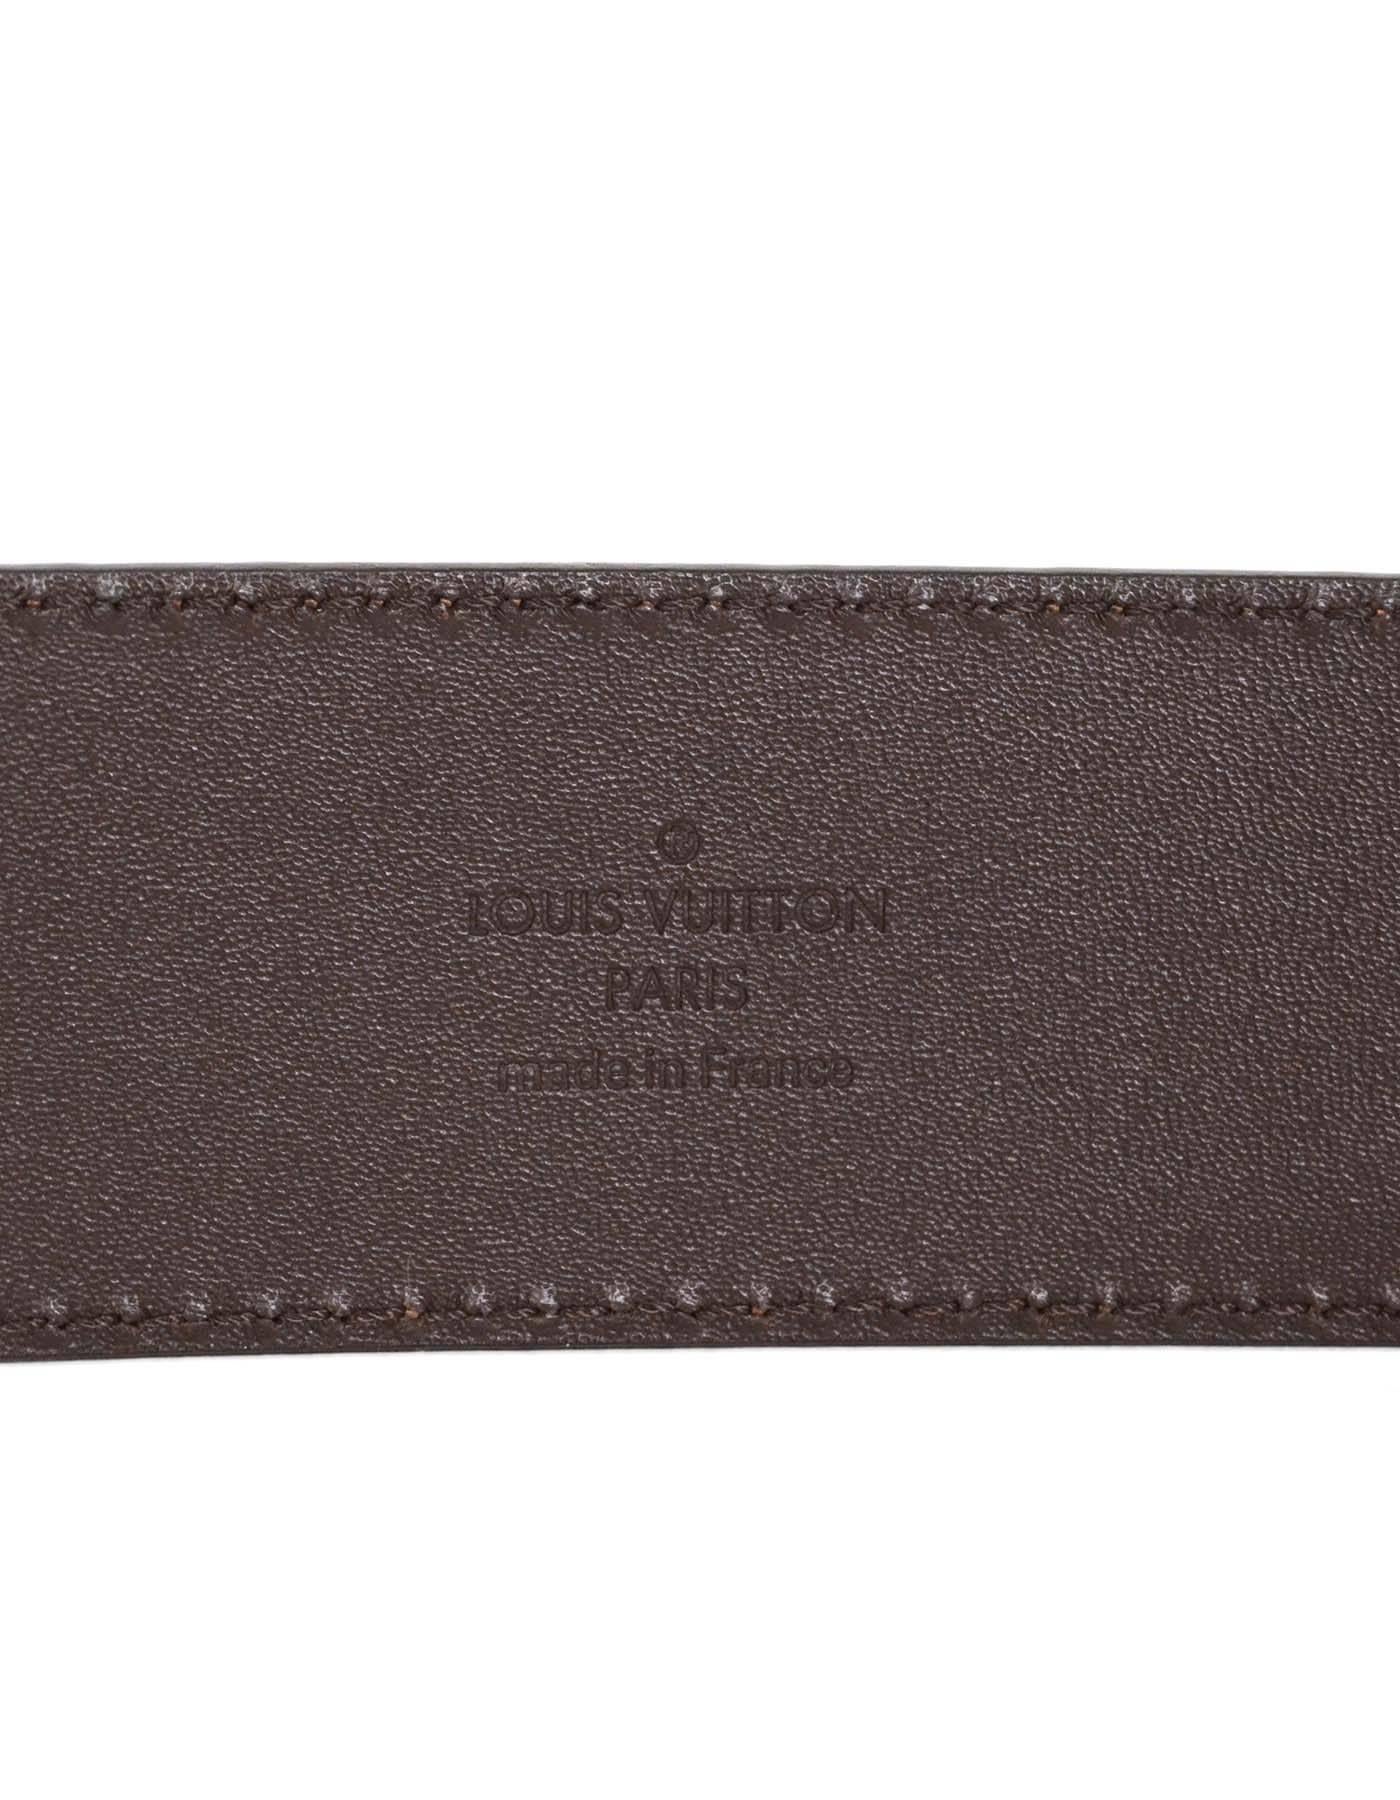 Louis Vuitton Initiales Damier Belt with LV Buckle sz 110 2